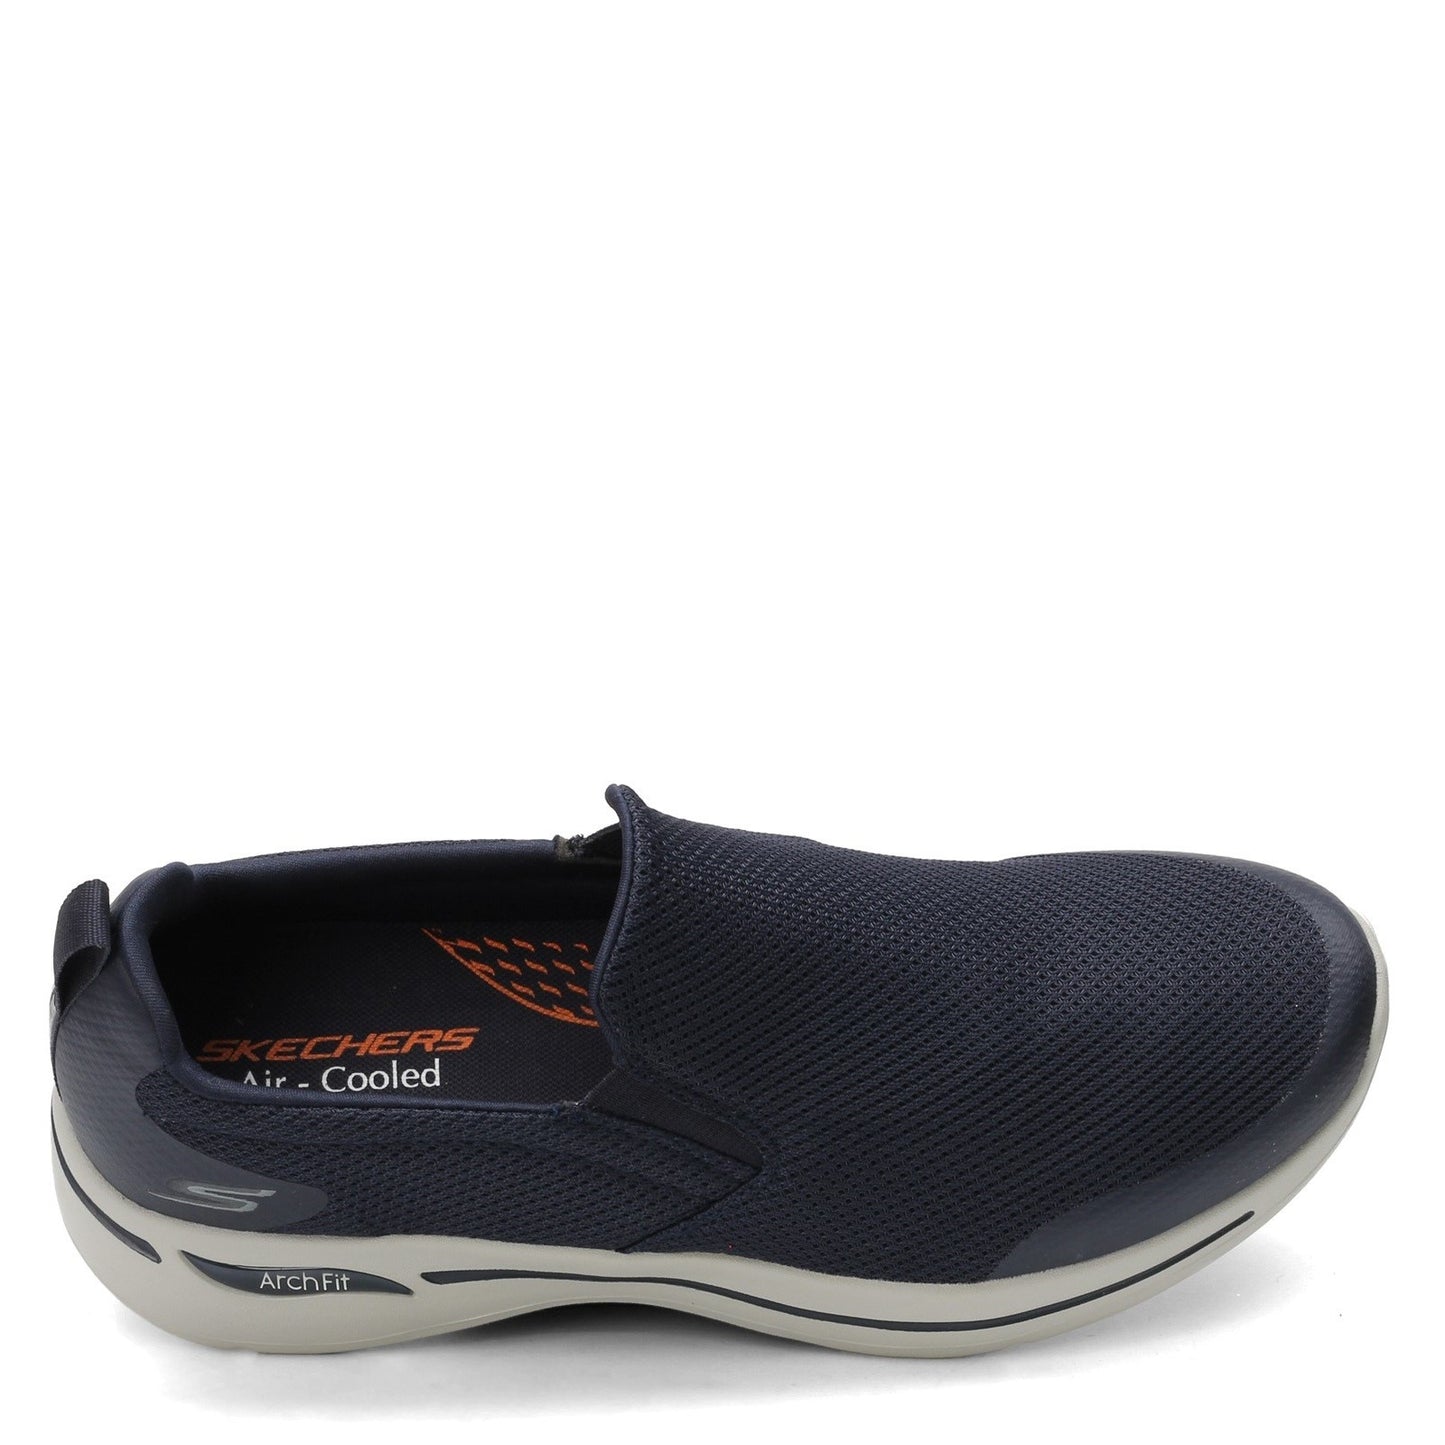 Peltz Shoes  Men's Skechers GOwalk Arch Fit - Togpath Slip-On - Wide Width NAVY GREY 216121WW-NVGY